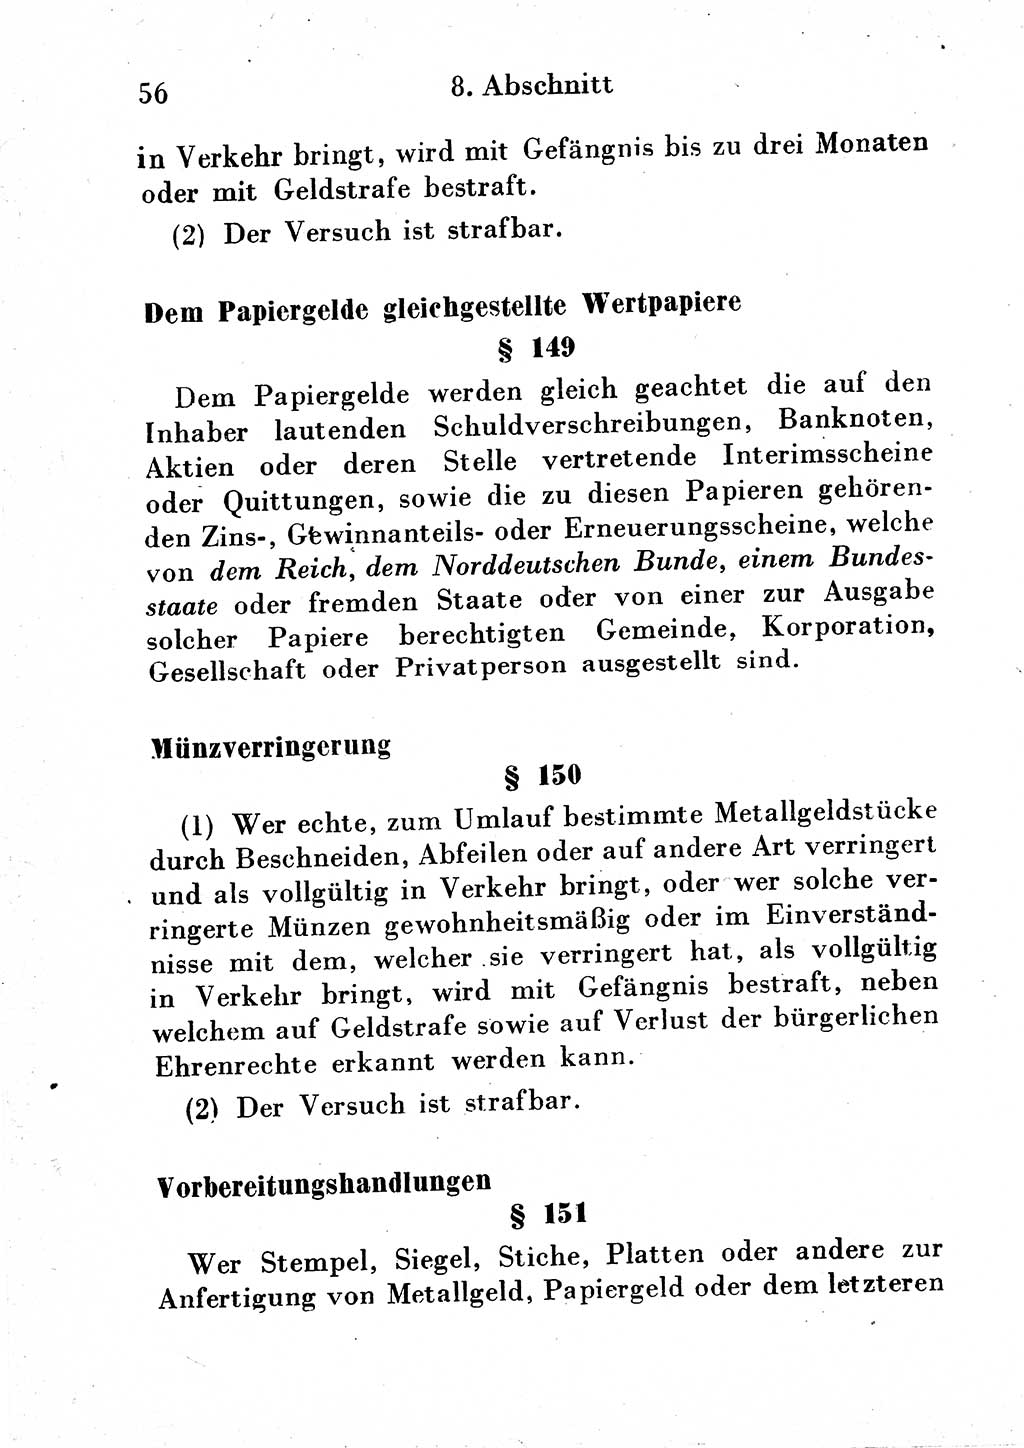 Strafgesetzbuch (StGB) und andere Strafgesetze [Deutsche Demokratische Republik (DDR)] 1954, Seite 56 (StGB Strafges. DDR 1954, S. 56)